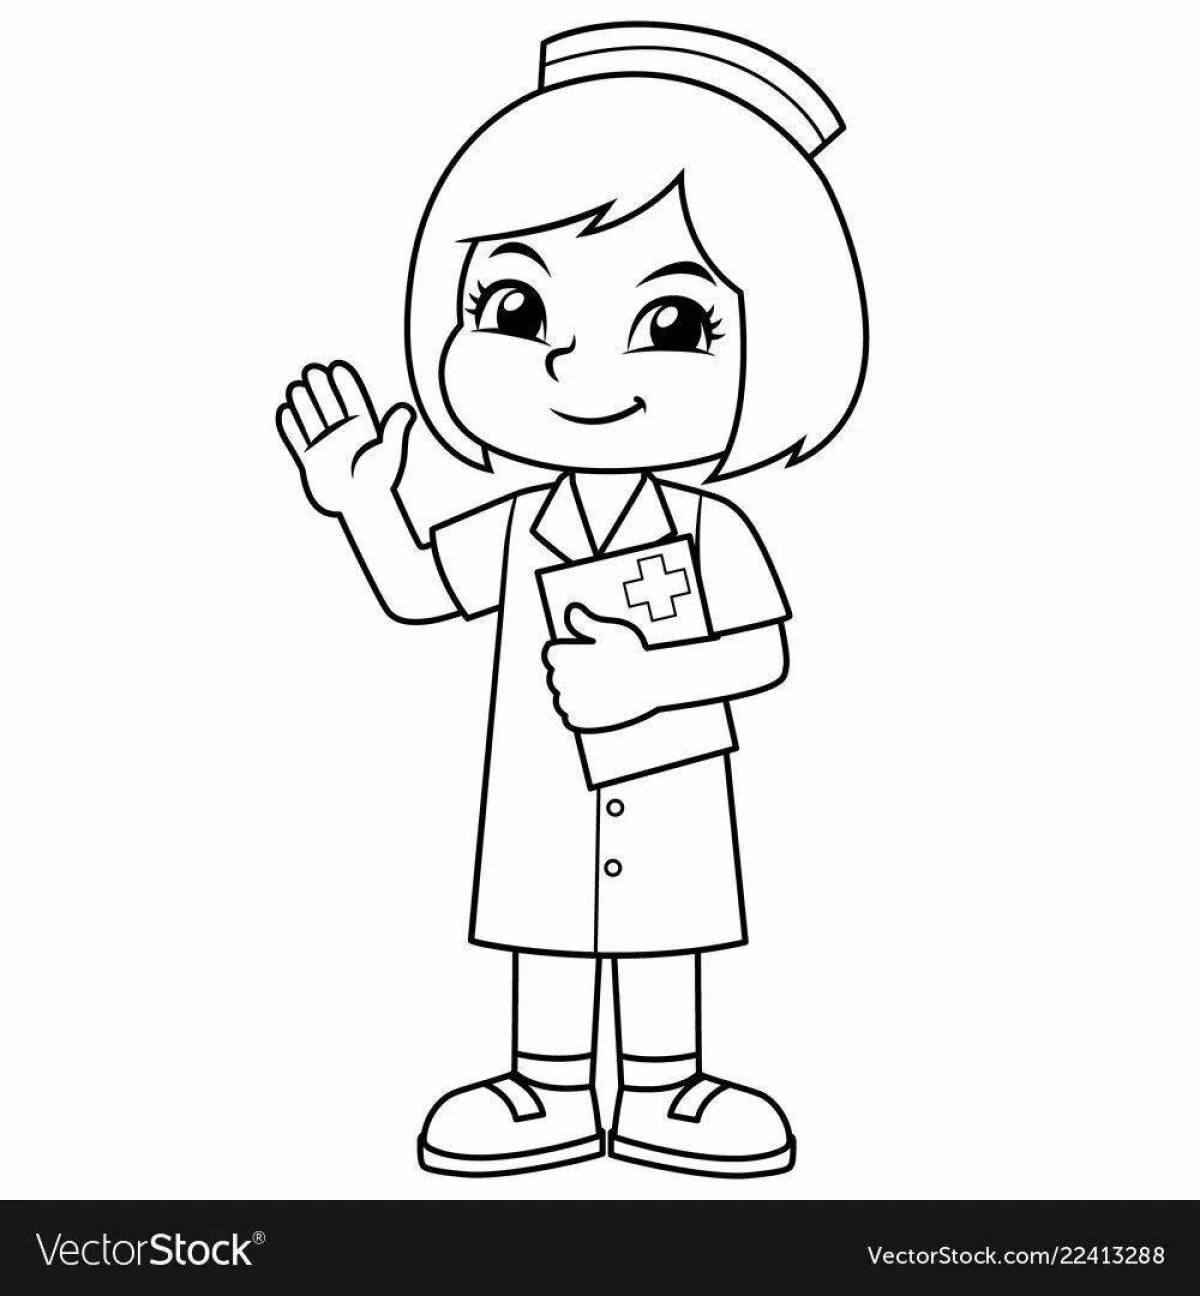 Enthusiastic nurse coloring page